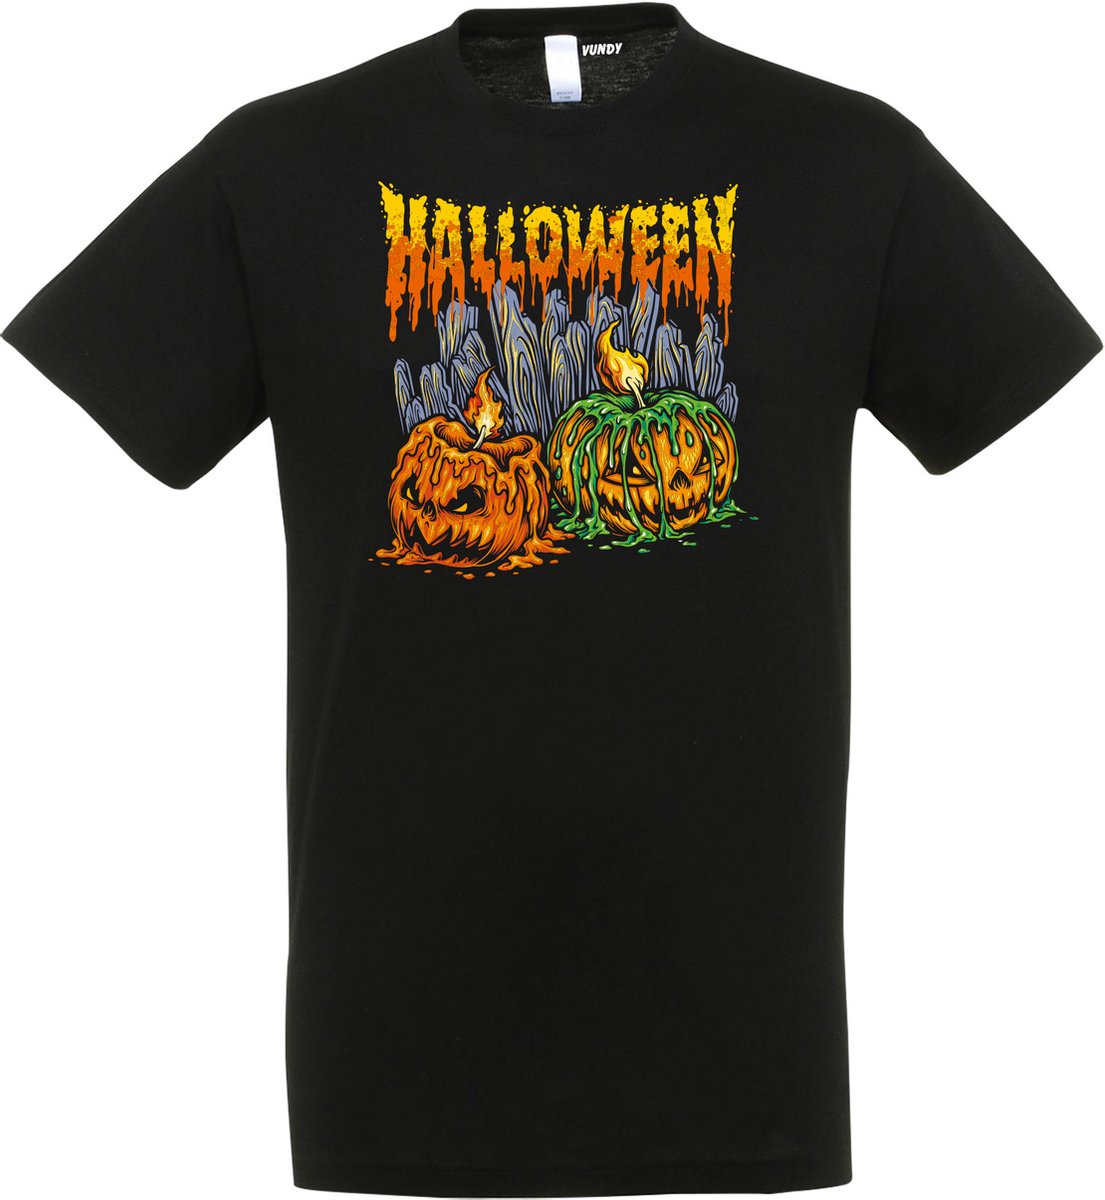 T-shirt kinderen Halloween Pompoen met kaarsjes | Halloween kostuum kind dames heren | verkleedkleren meisje jongen | Zwart | maat 104